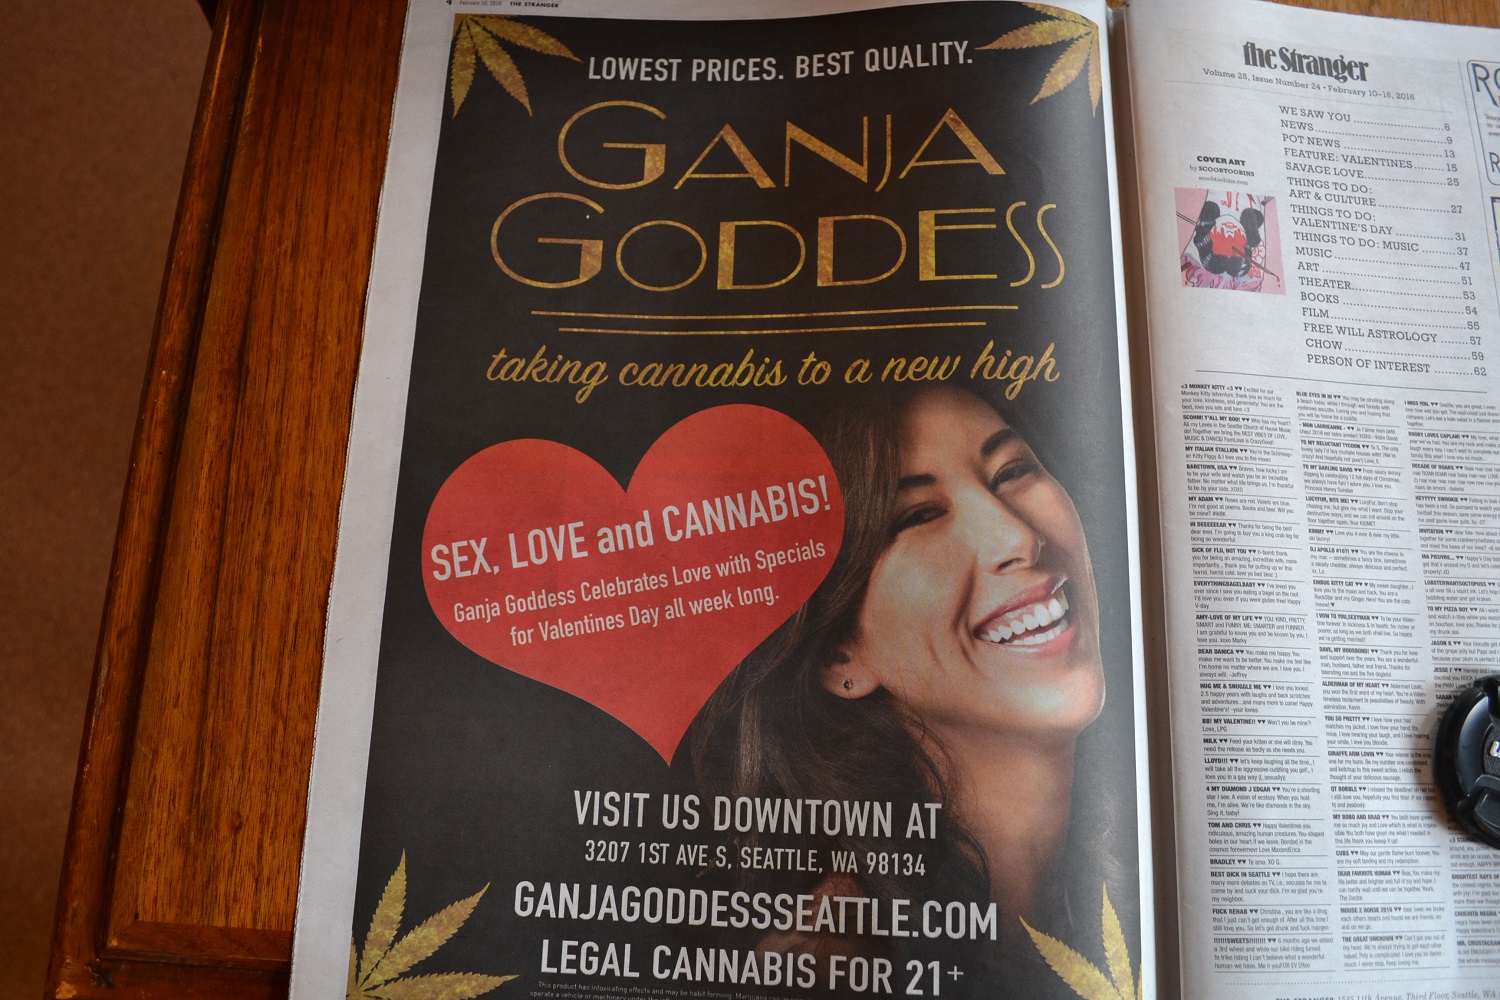 シアトルで見つけた広告の写真